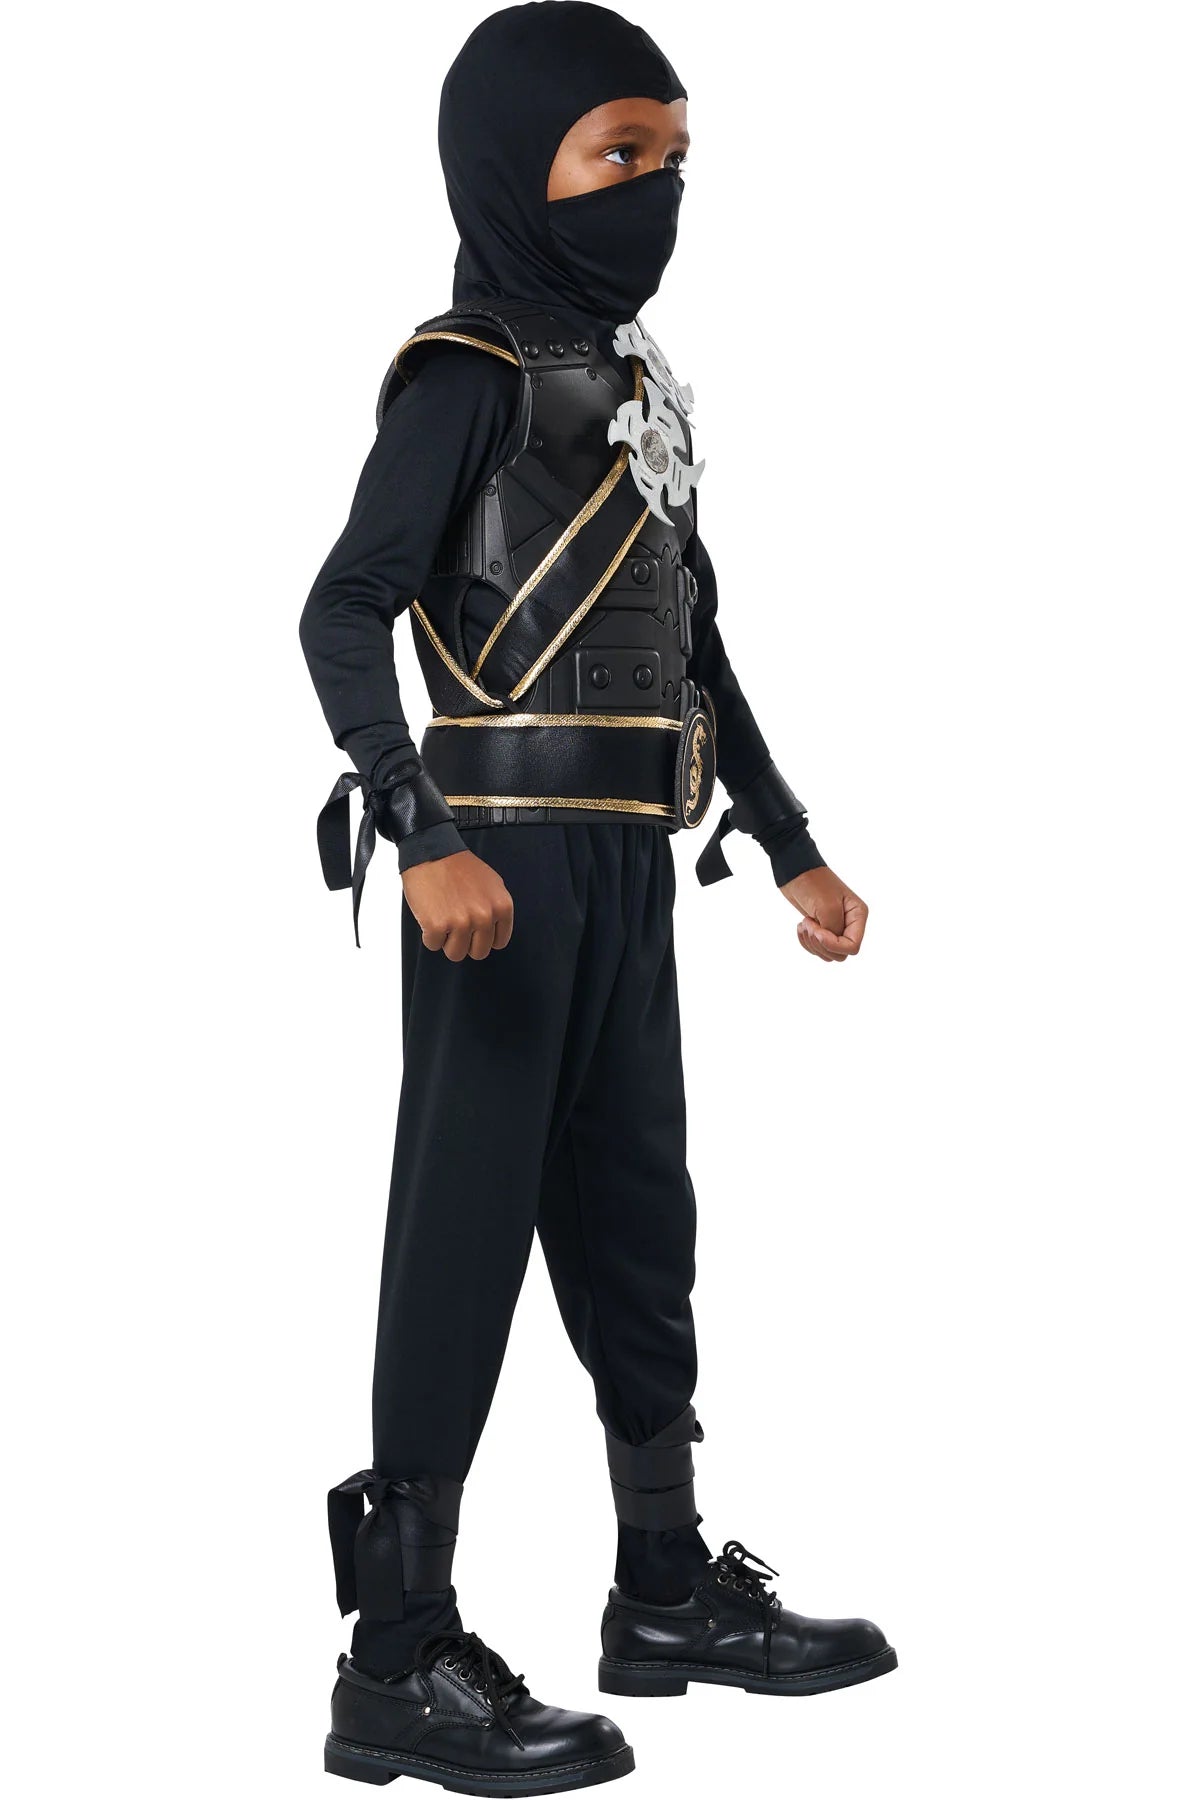 Elite Ninja Costume - Child